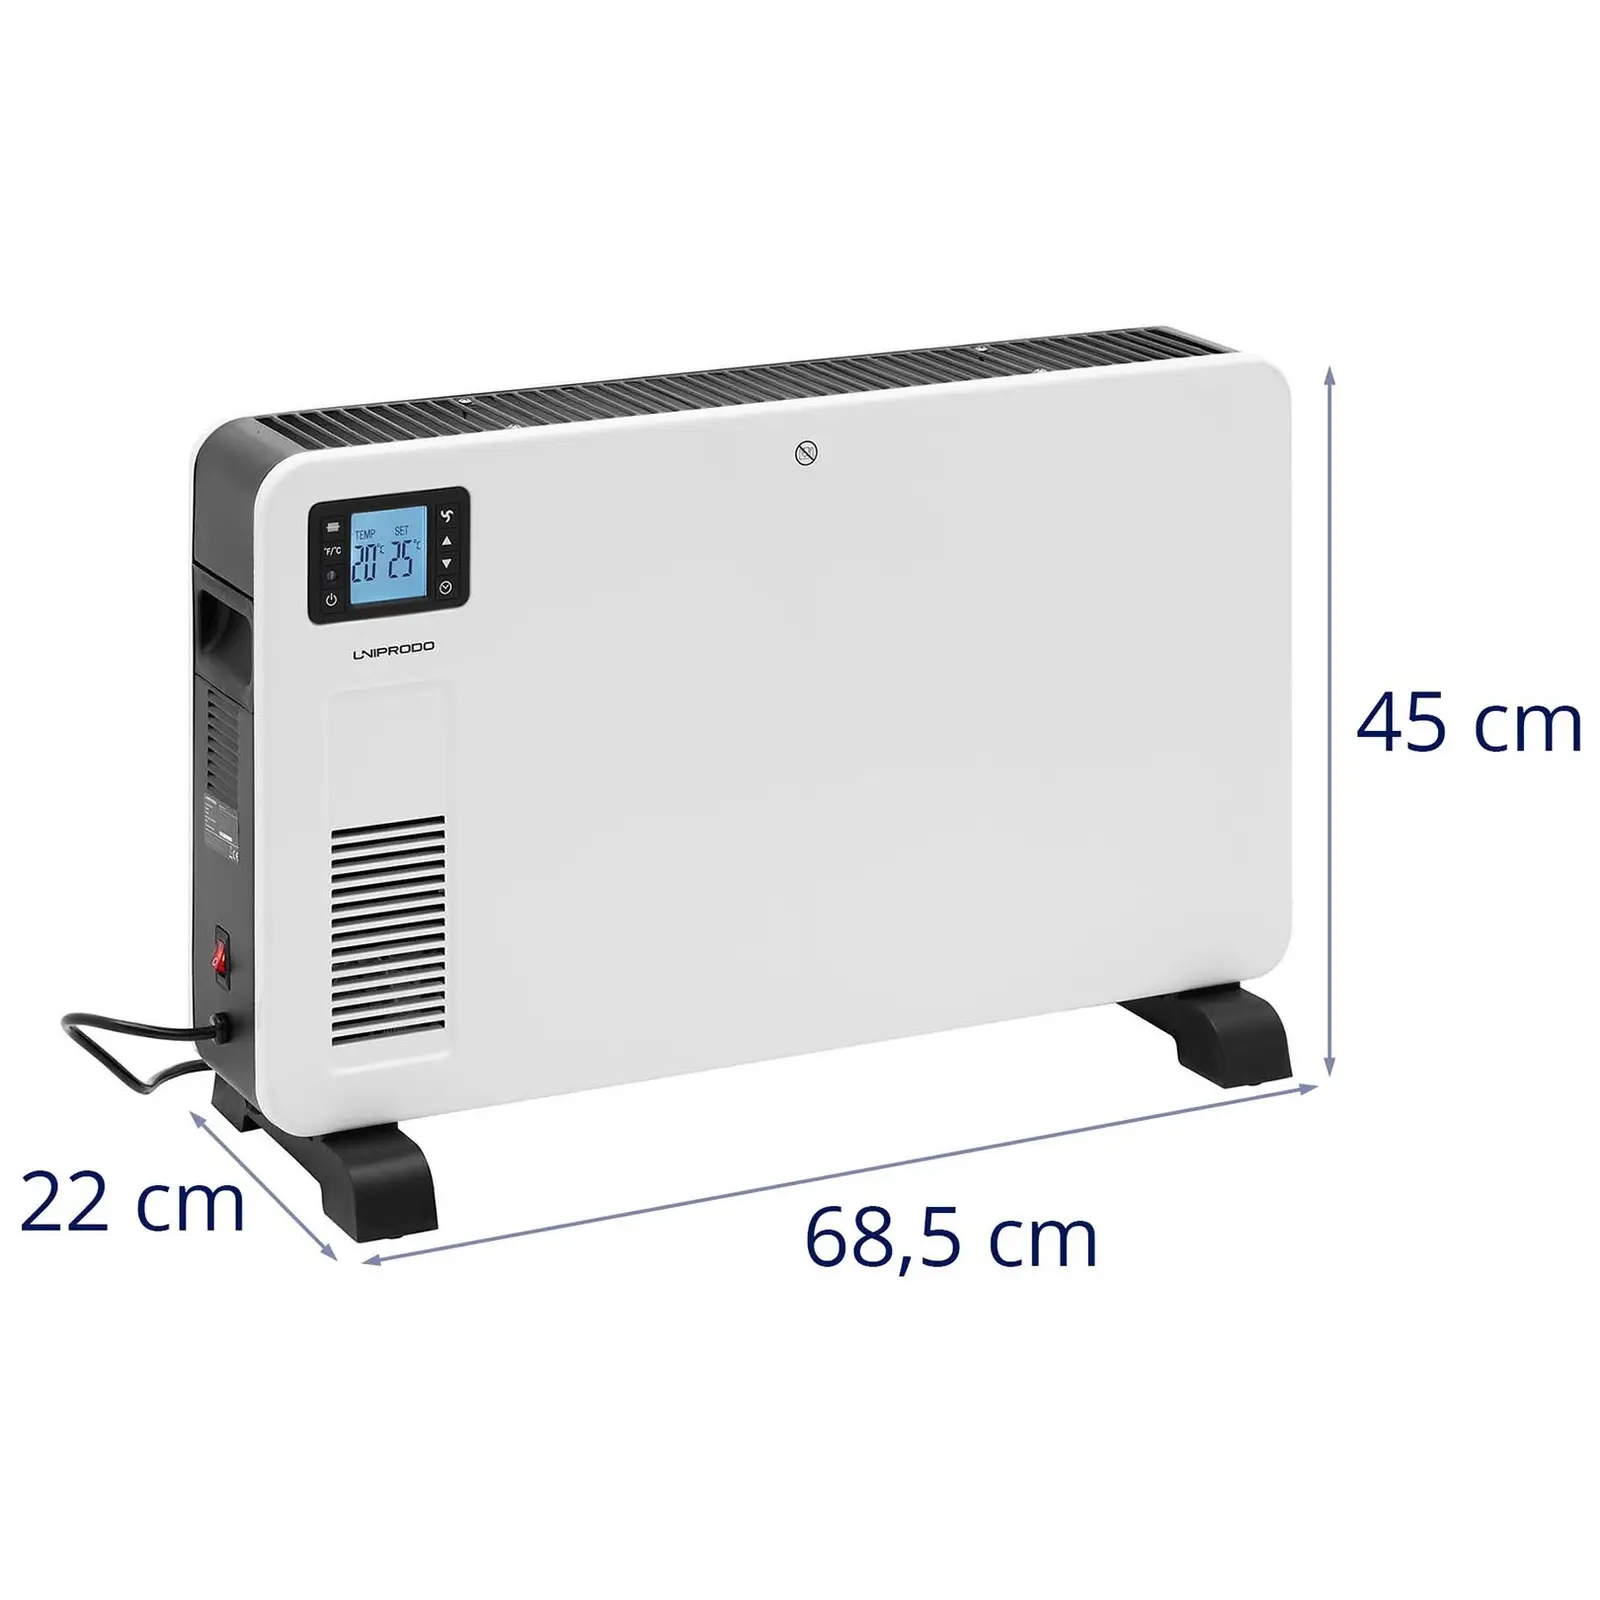 Termoconvettore elettrico - Per 25 m² - 2300 W - Timer - LCD - Telecomando